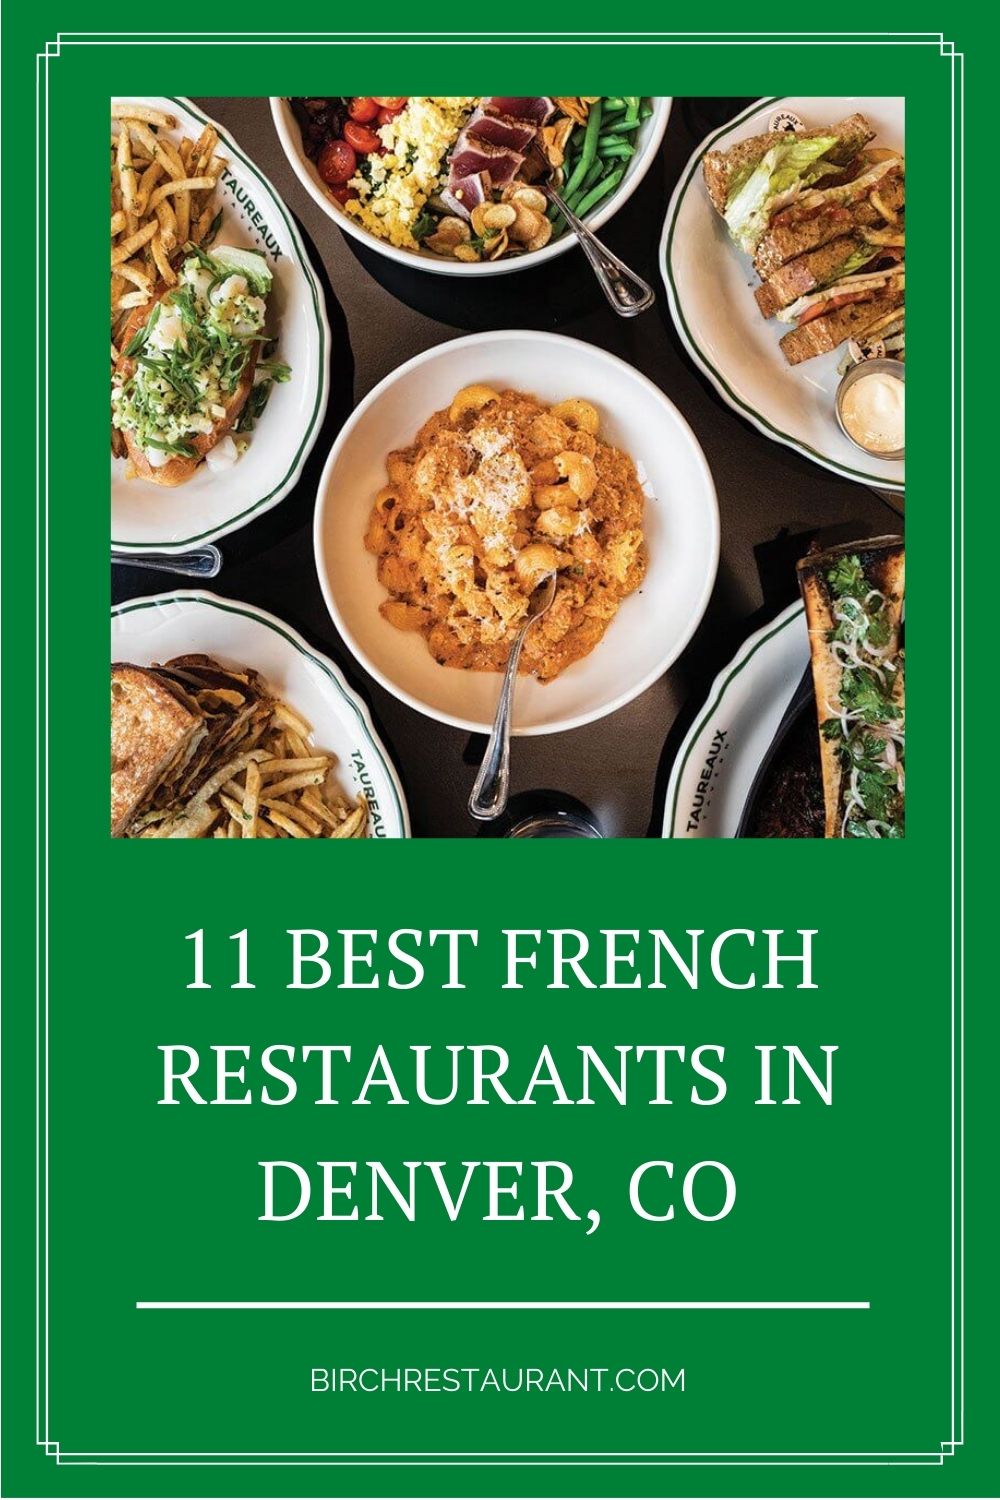 French Restaurants in Denver